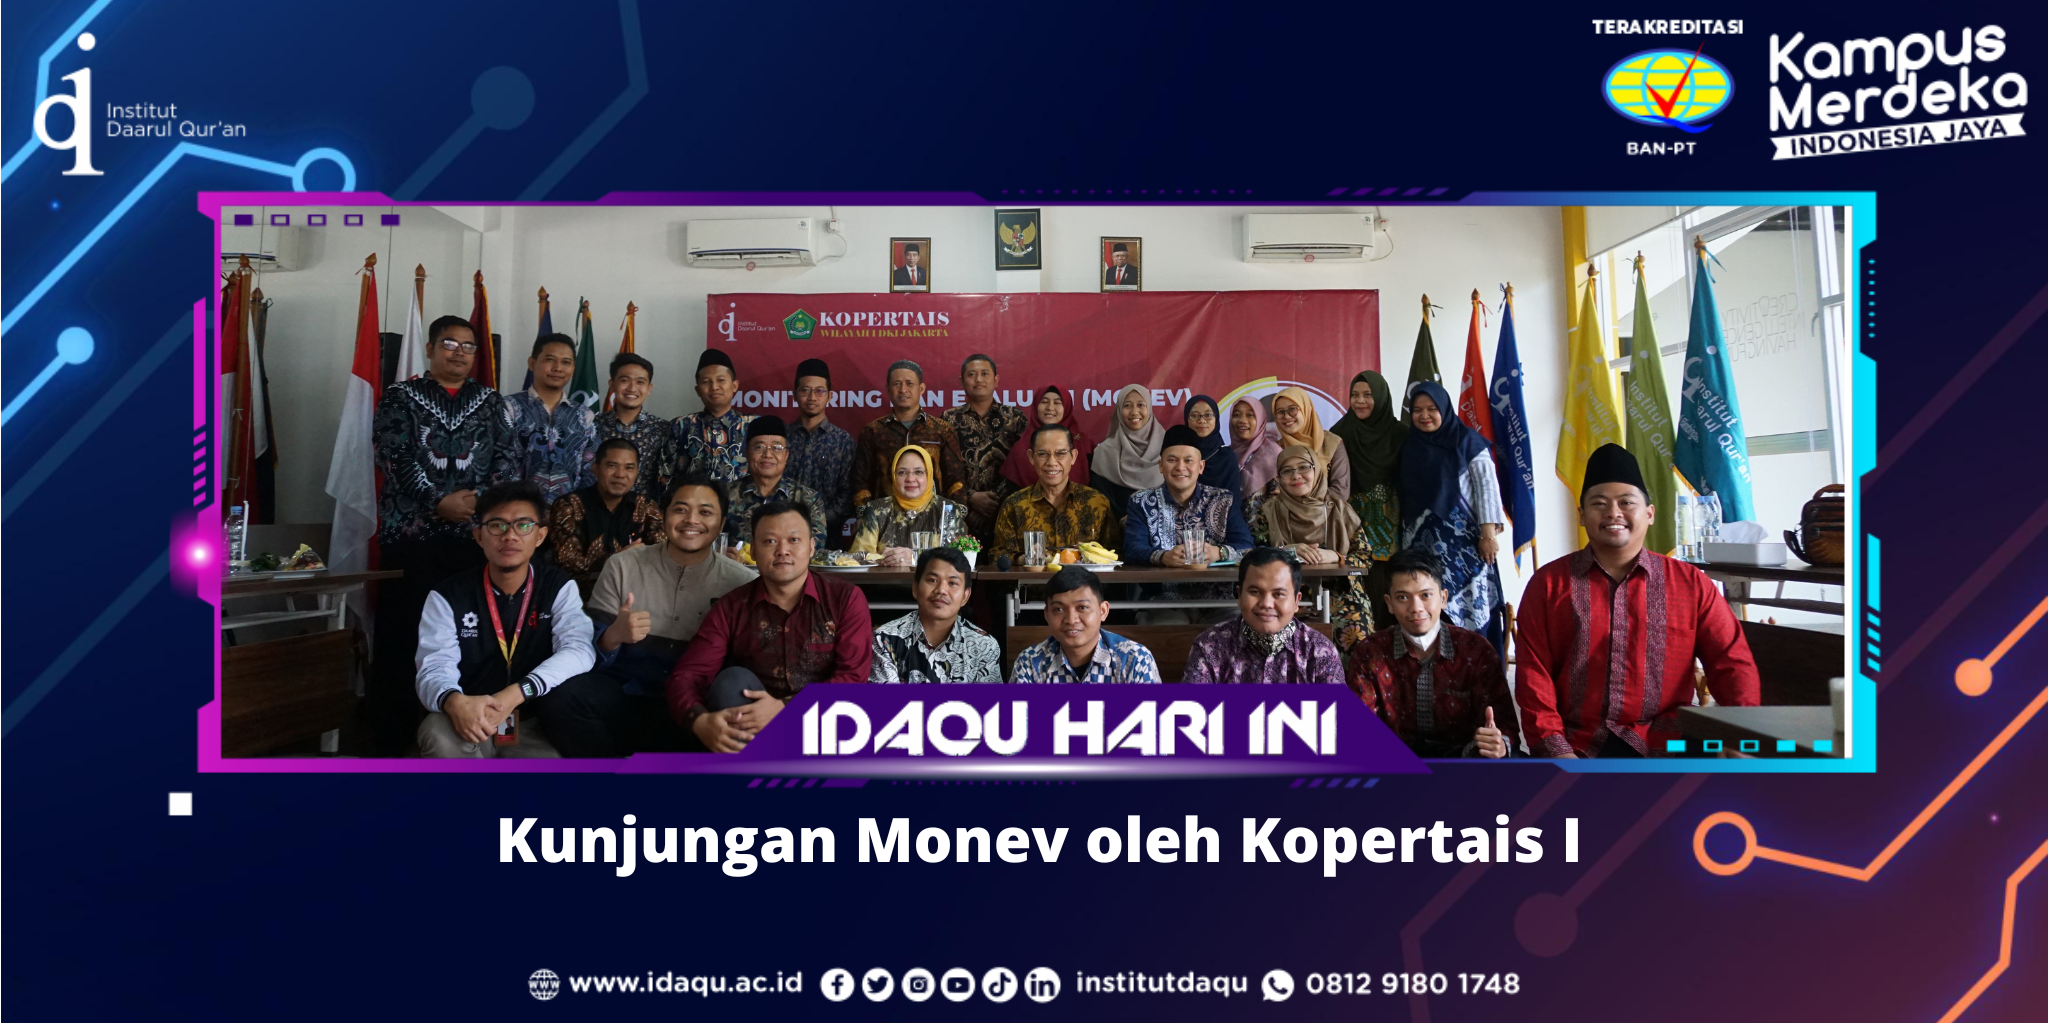 Kunjungan Monitoring dan Evaluasi (Monev) Kopertais Wilayah I DKI Jakarta dan Banten ke Idaqu